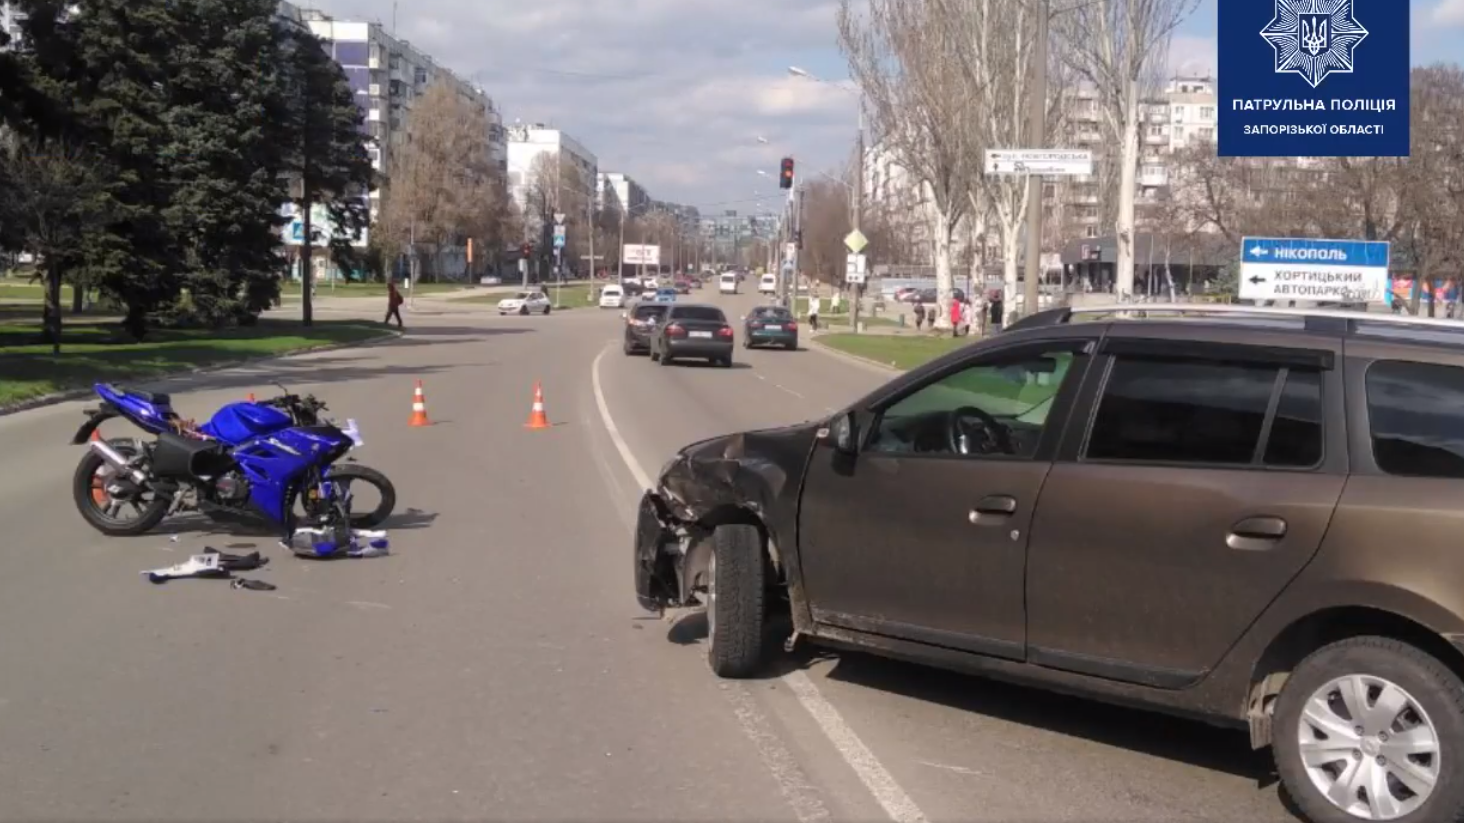 В Запорожье на Бабурке водитель легковушки сбил мотоциклиста, – ВИДЕО